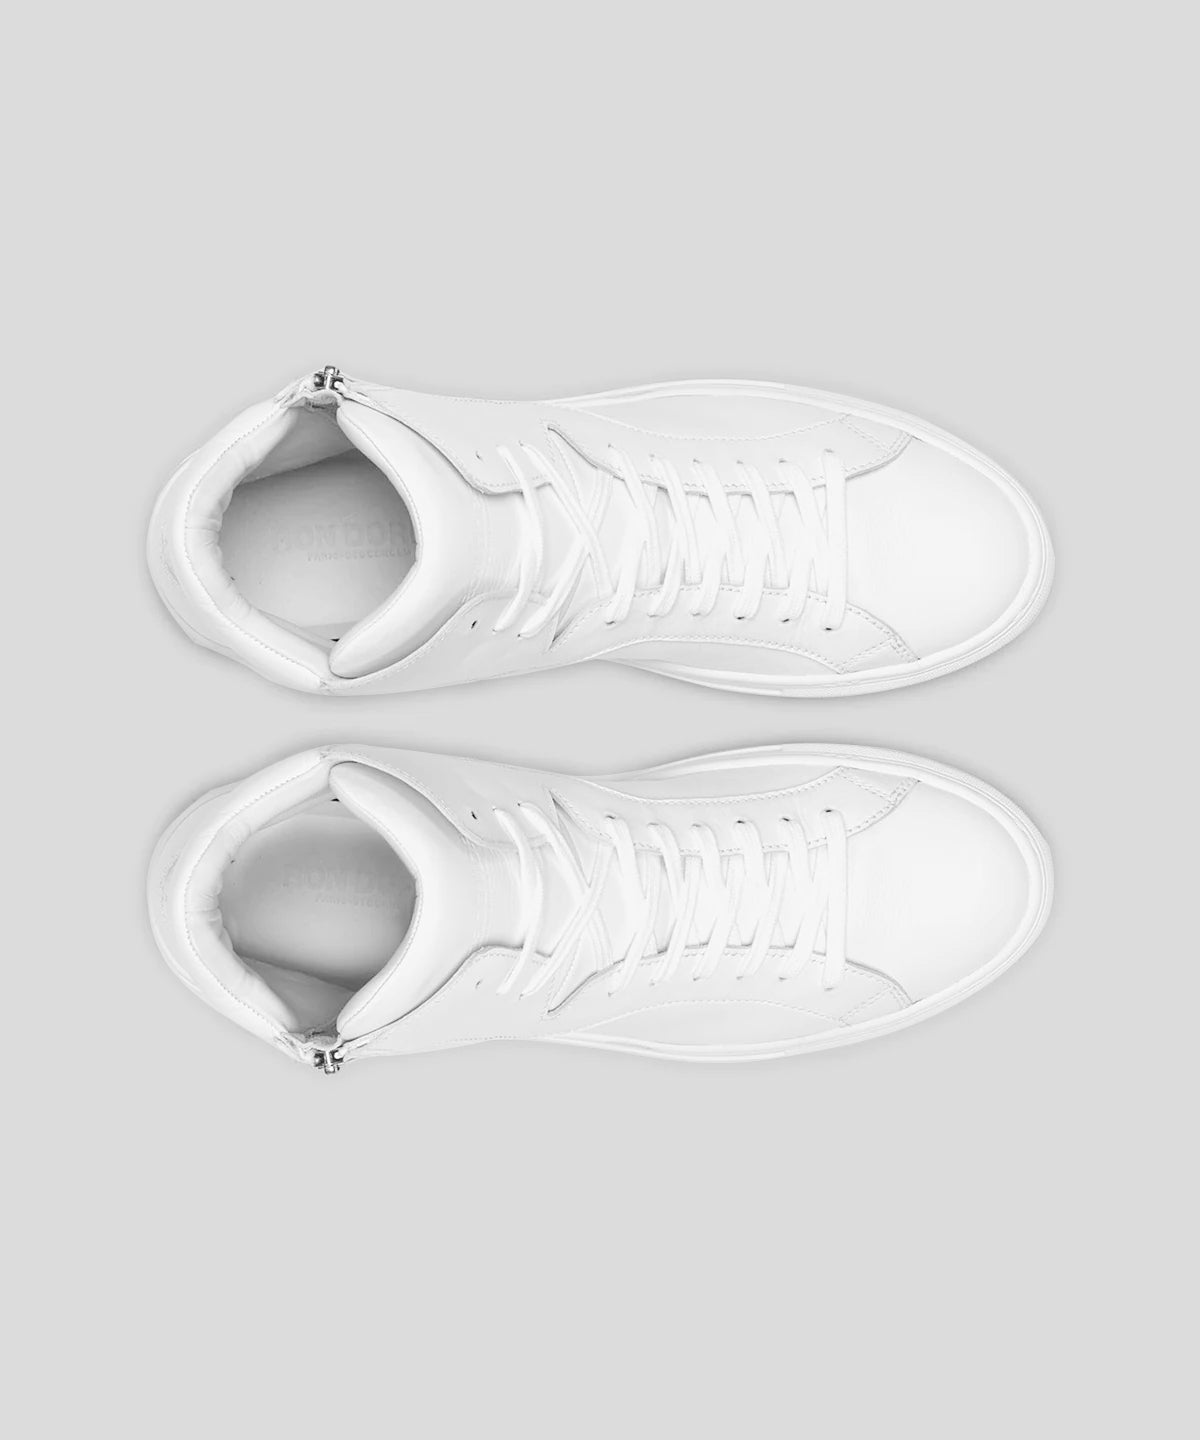 Chaussures de sport montantes unis: Blanc